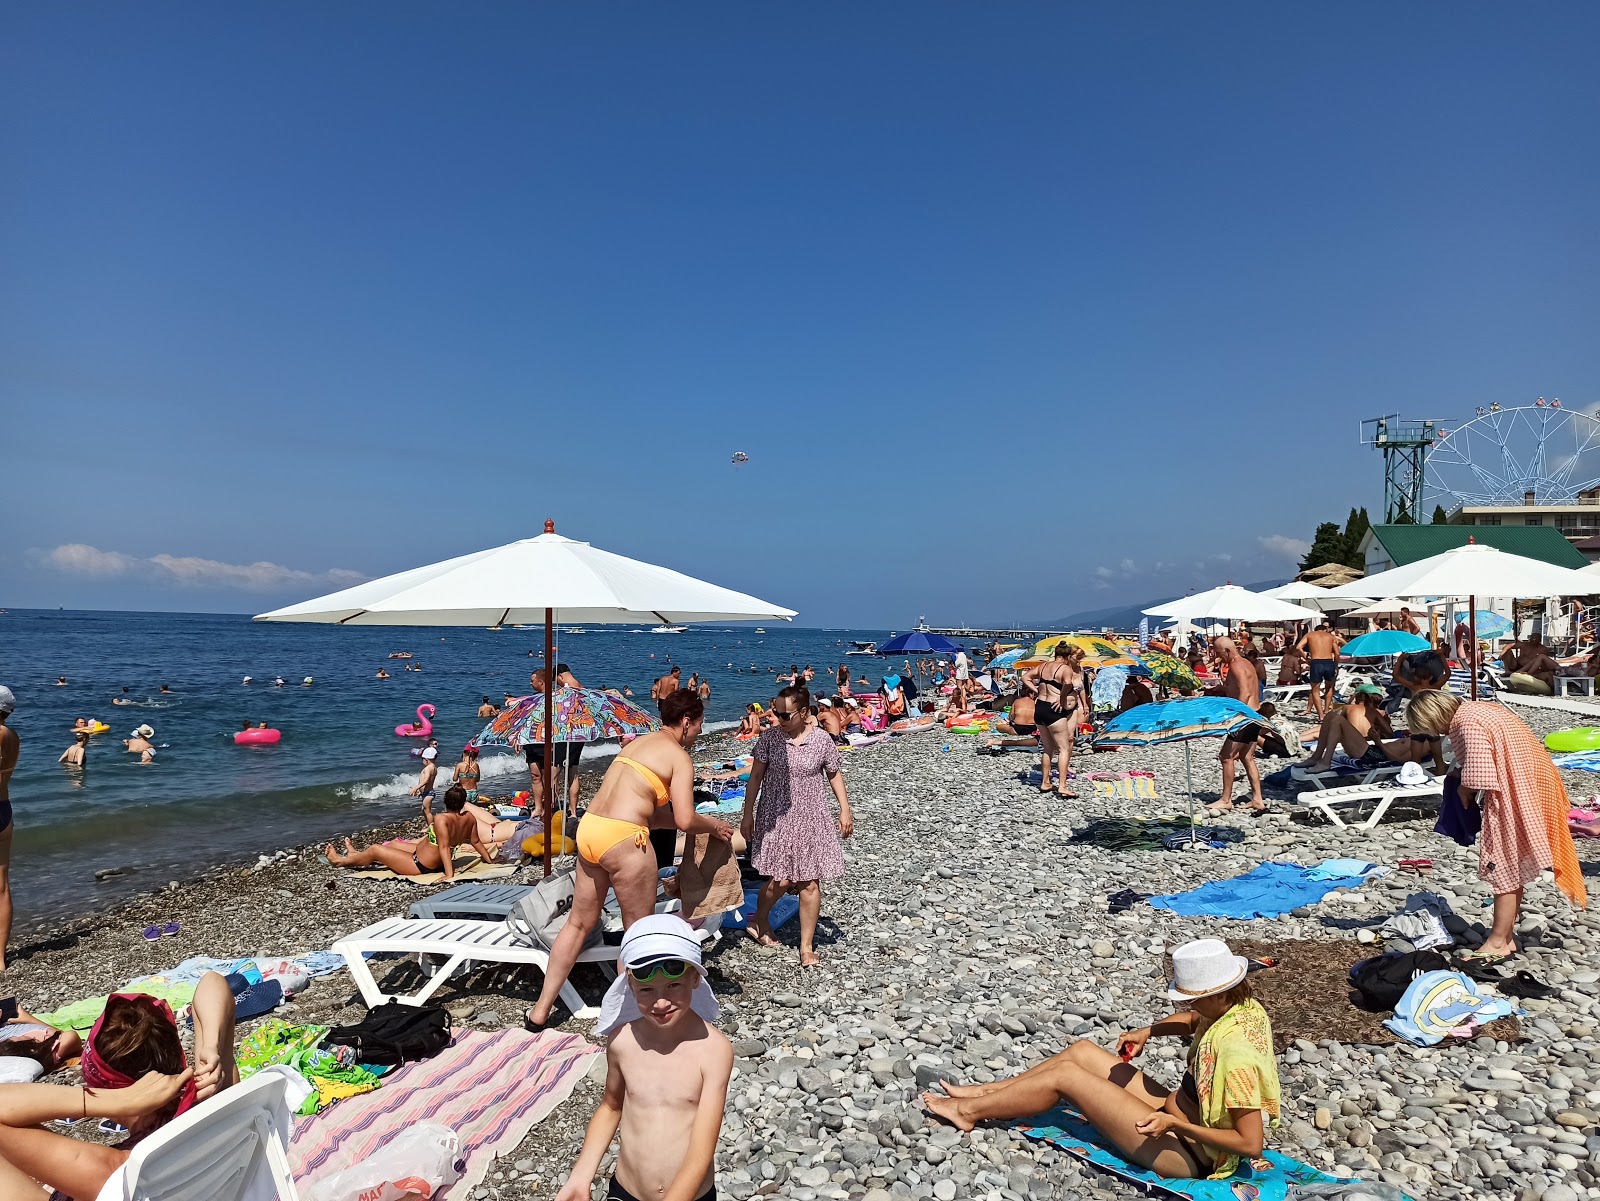 Lazarevskoe beach'in fotoğrafı - rahatlamayı sevenler arasında popüler bir yer